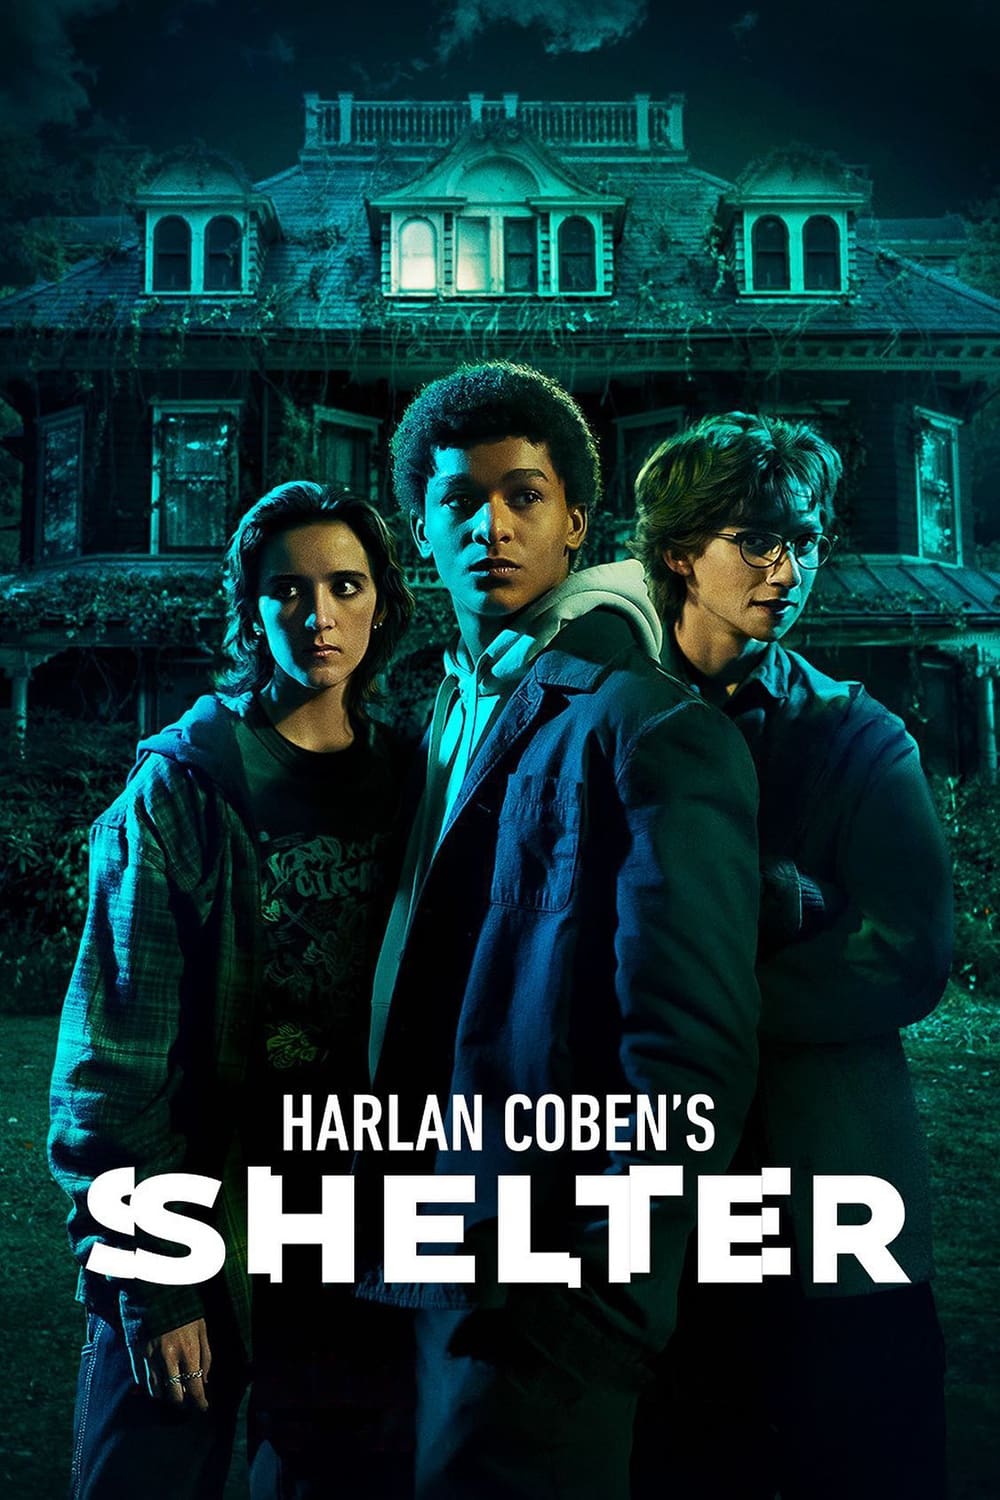 Harlan Coben's Shelter ฮาร์ลาน โคเบน - ผีเสื้อแห่งความลับ